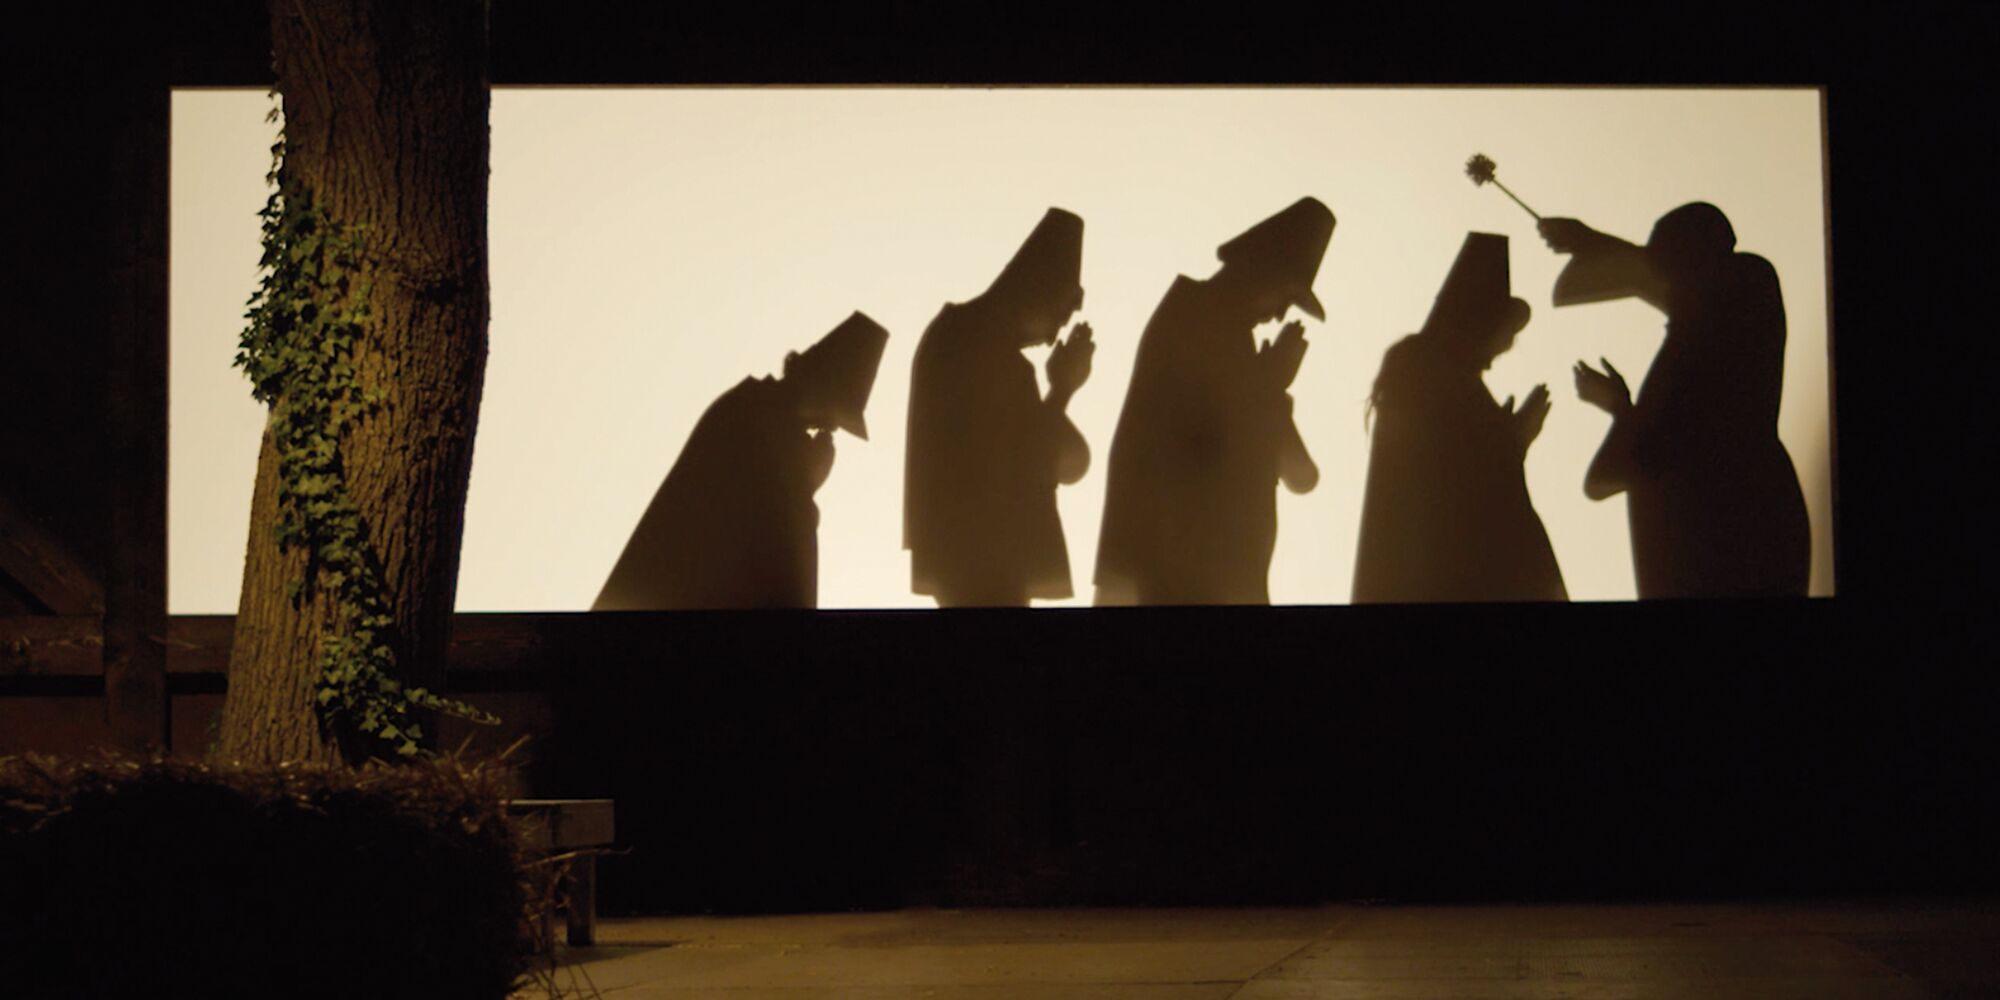 Man sieht eine Szene im Schattentheater. Ein Pfarrer segnet vier betende Silhouetten mit Weihwasser. Links im Vordergrund ein Baum zu sehen.